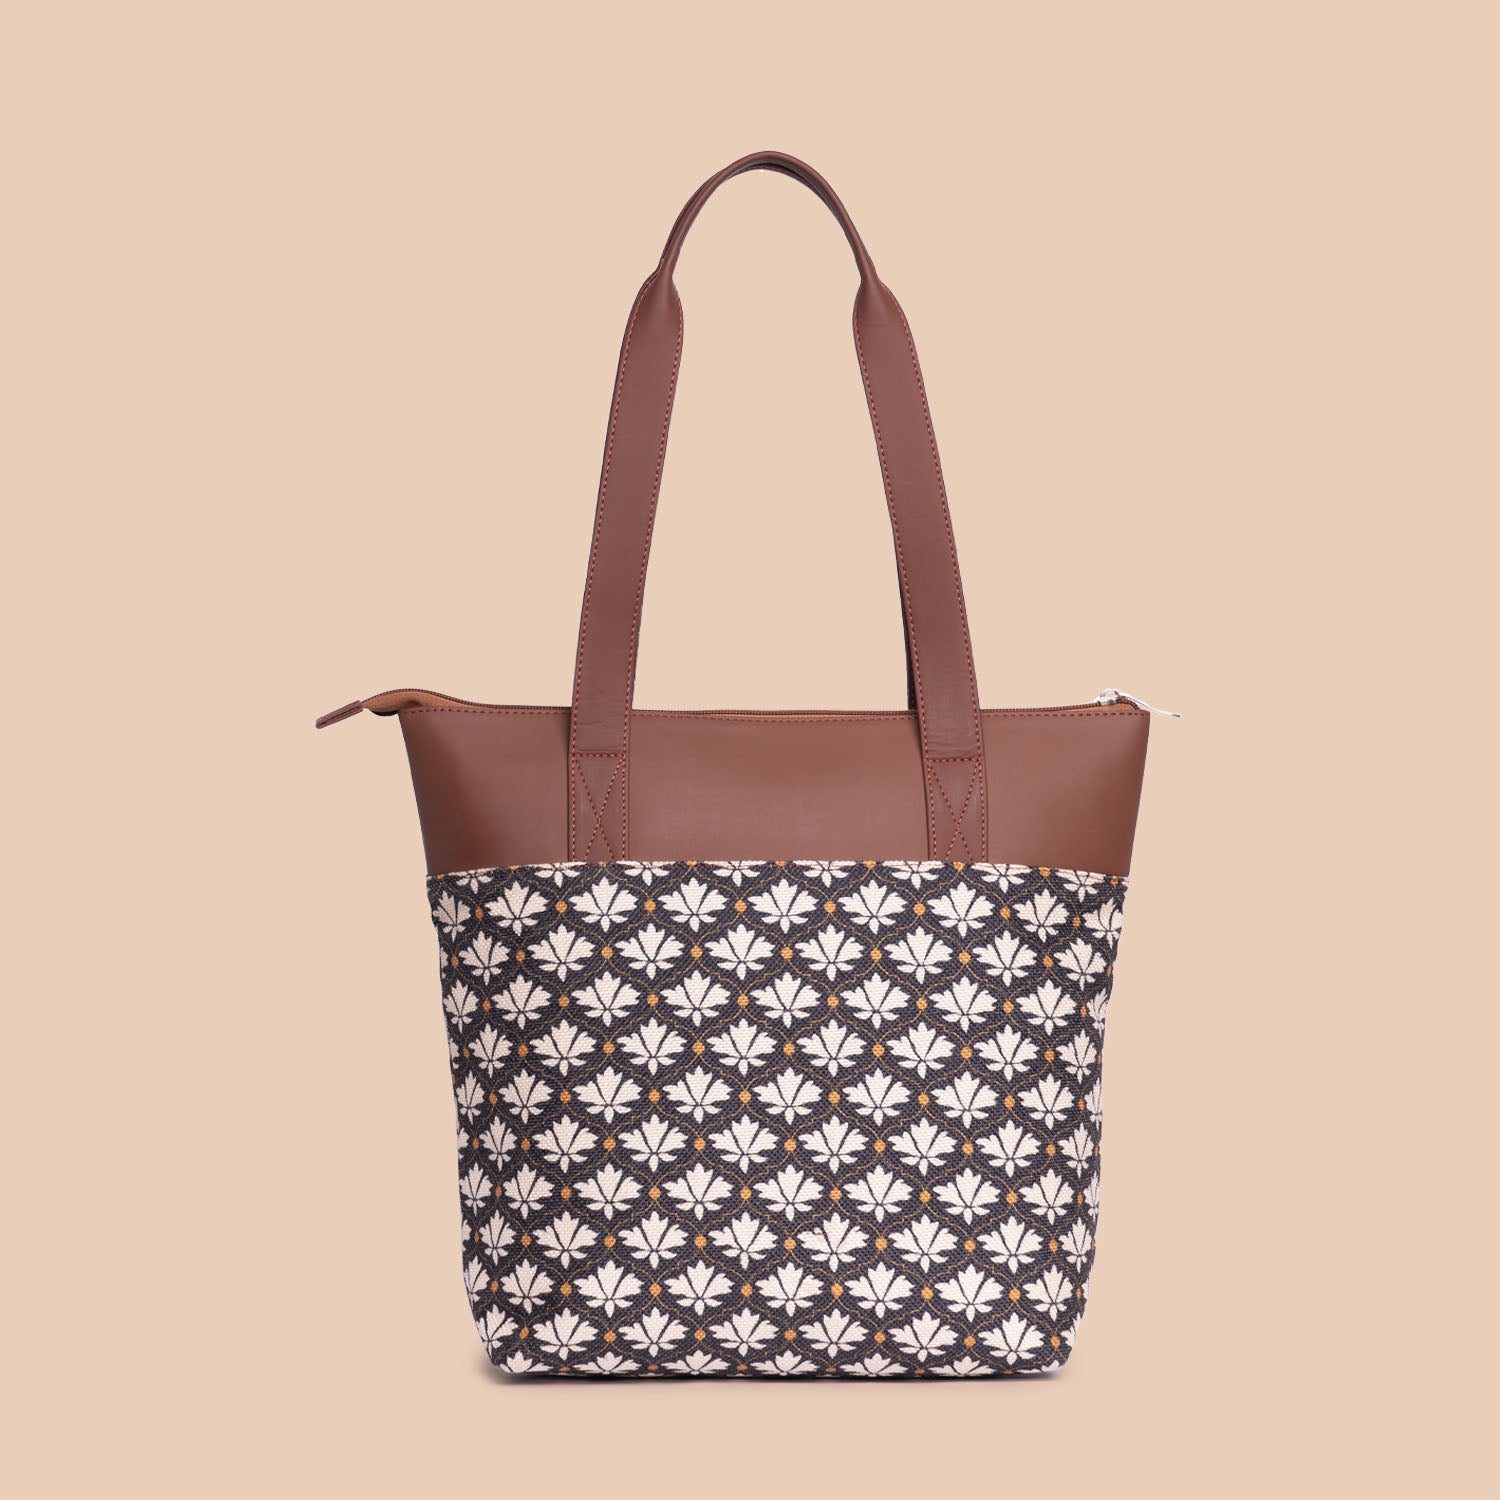 Bidri Kaiser - Women's Work Bag & Everyday Tote Combo